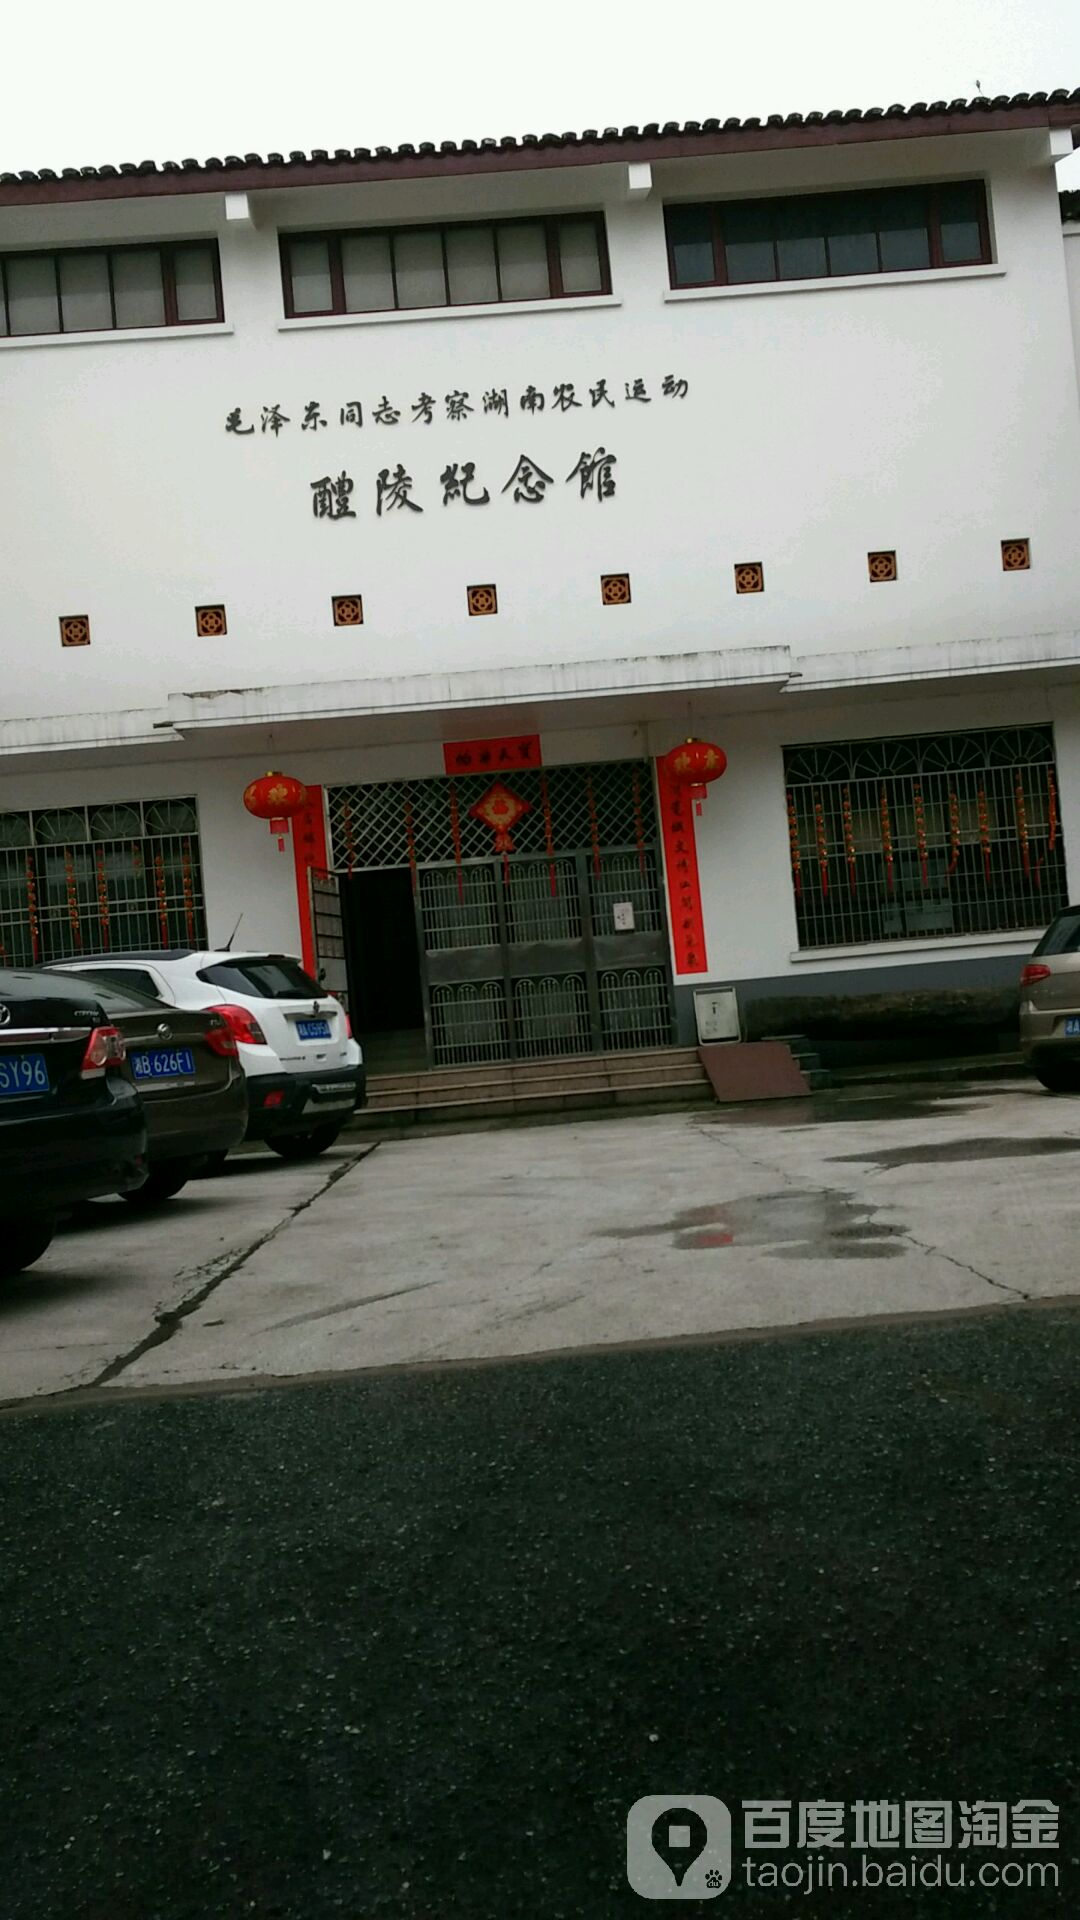 毛泽东同志考察湖南农民运动醴陵纪念馆